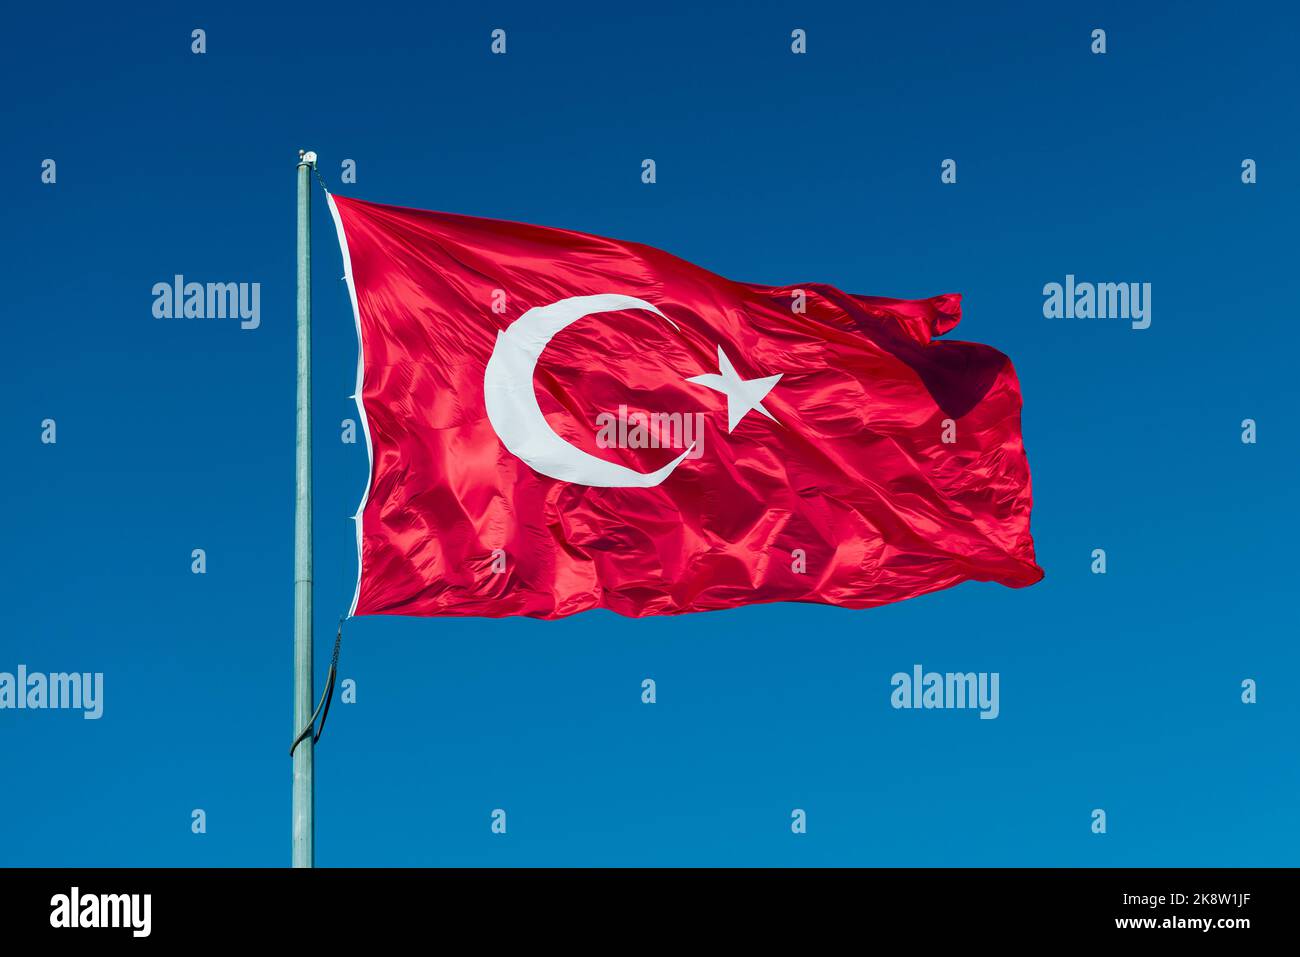 Drapeau de la Turquie. Drapeau national composé d'un champ rouge (arrière-plan) avec une étoile blanche centrale et un croissant. Banque D'Images